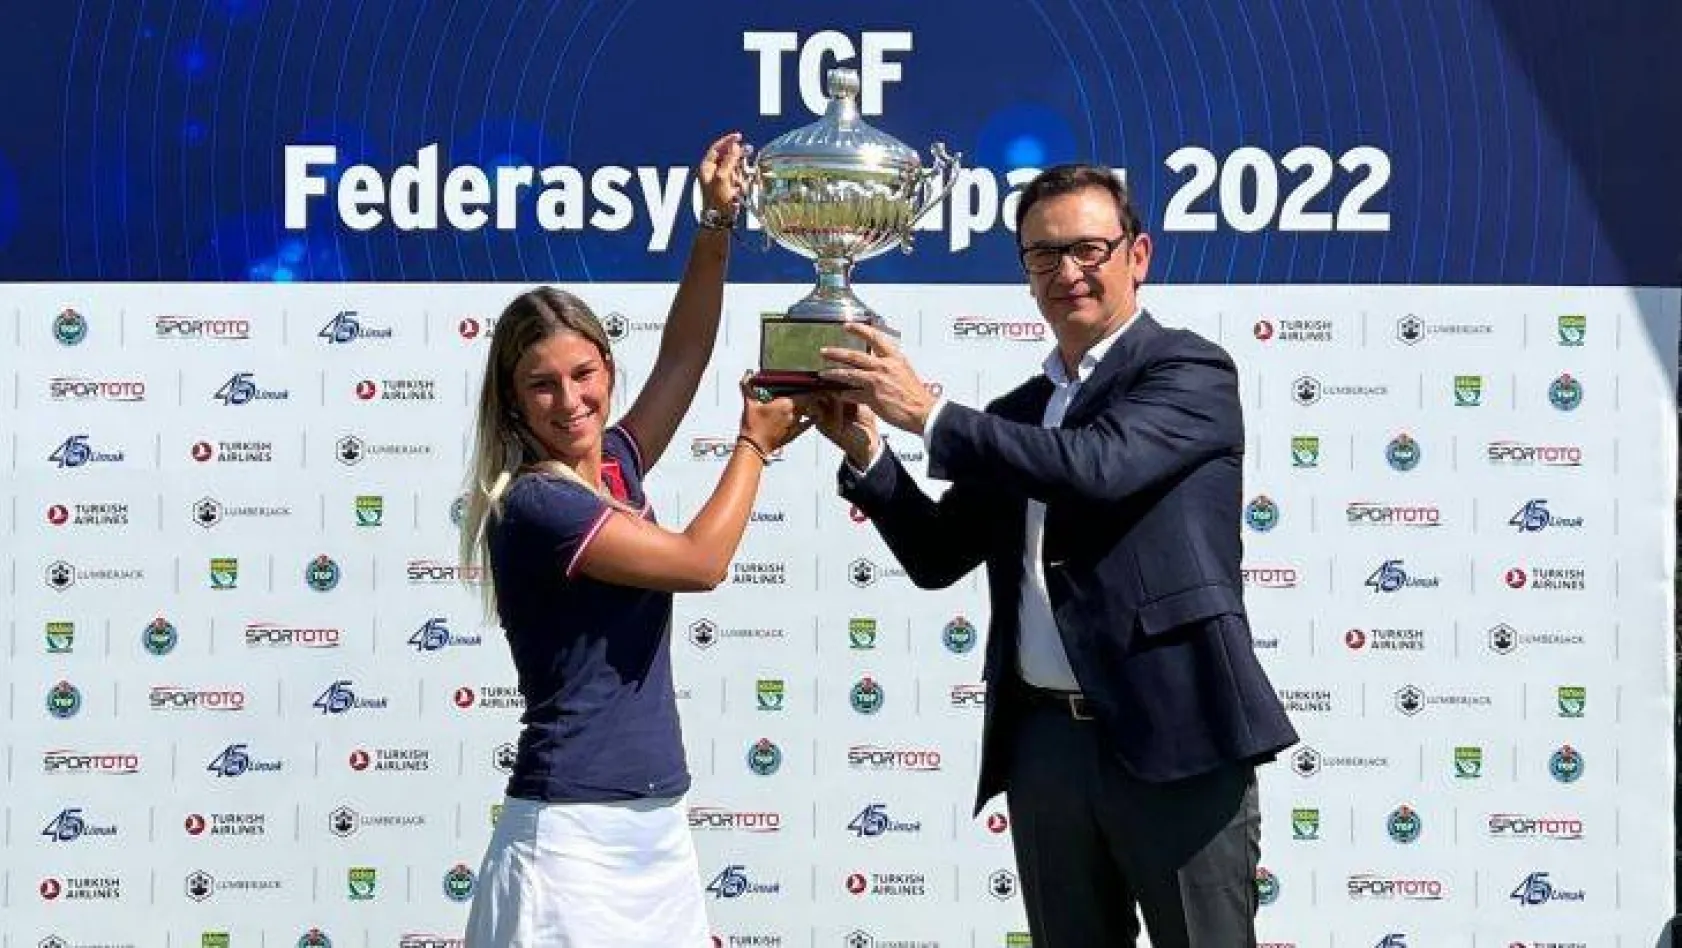 2022 TGF Federasyon Kupası şampiyonu Ilgın Zeynep Denizci